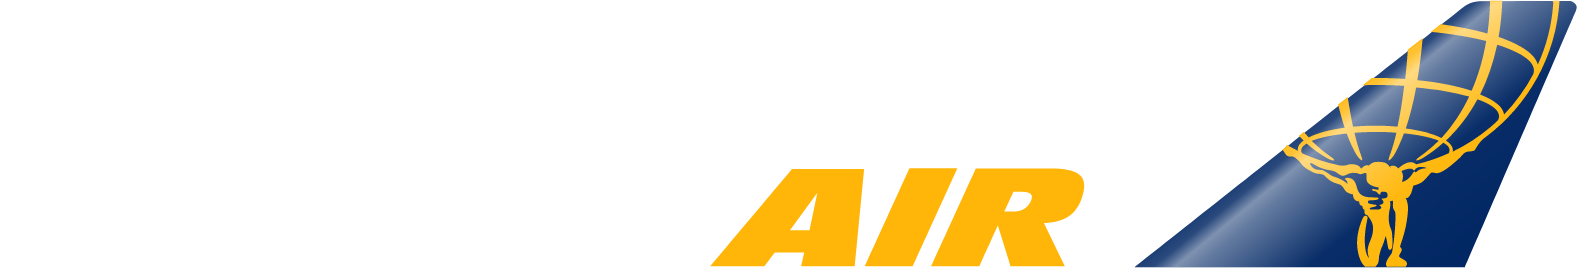 Atlas Air Worldwide Holdings logo grand pour les fonds sombres (PNG transparent)